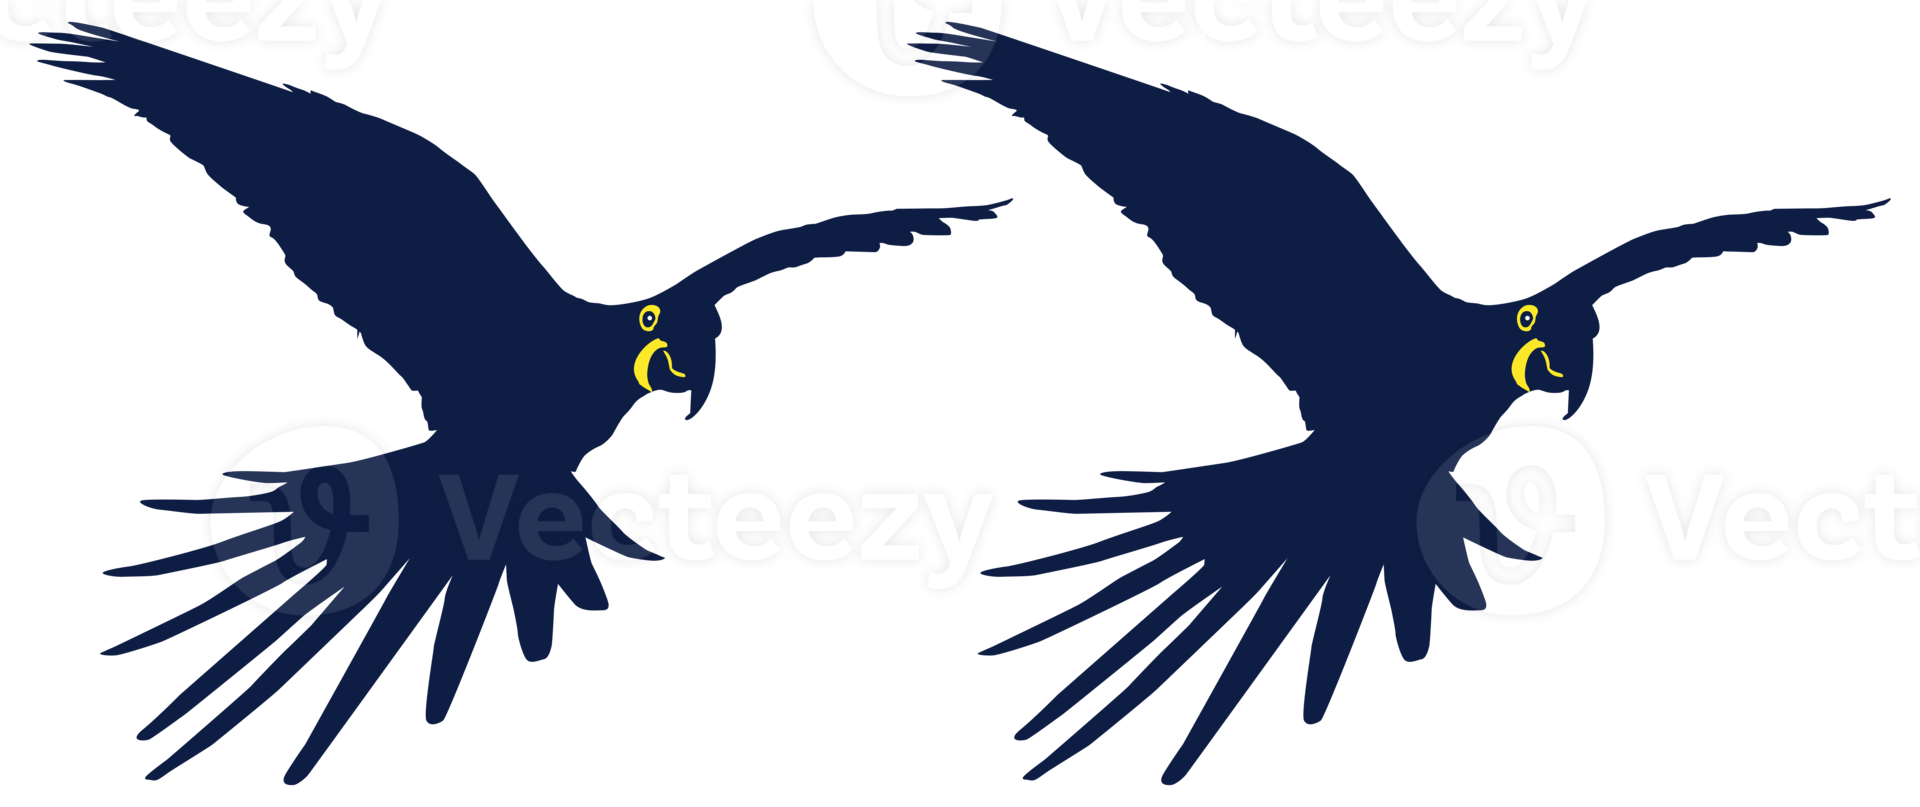 silueta de pájaro guacamayo volador para logotipo, pictograma, ilustración de arte, sitio web o elemento de diseño gráfico. formato png